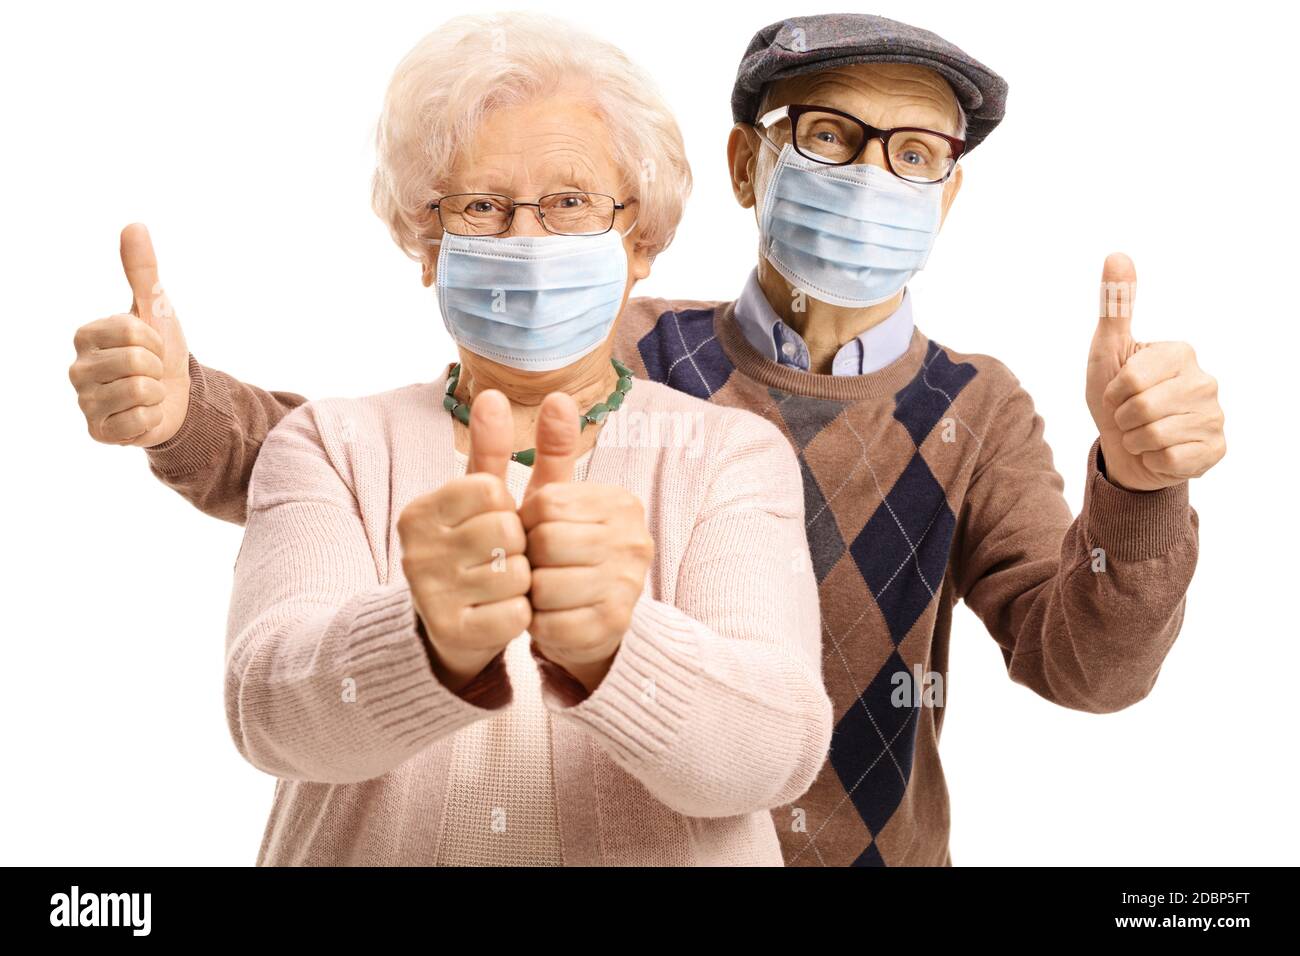 Homme et femme âgés avec des masques protecteurs montrant des pouces isolé sur fond blanc Banque D'Images